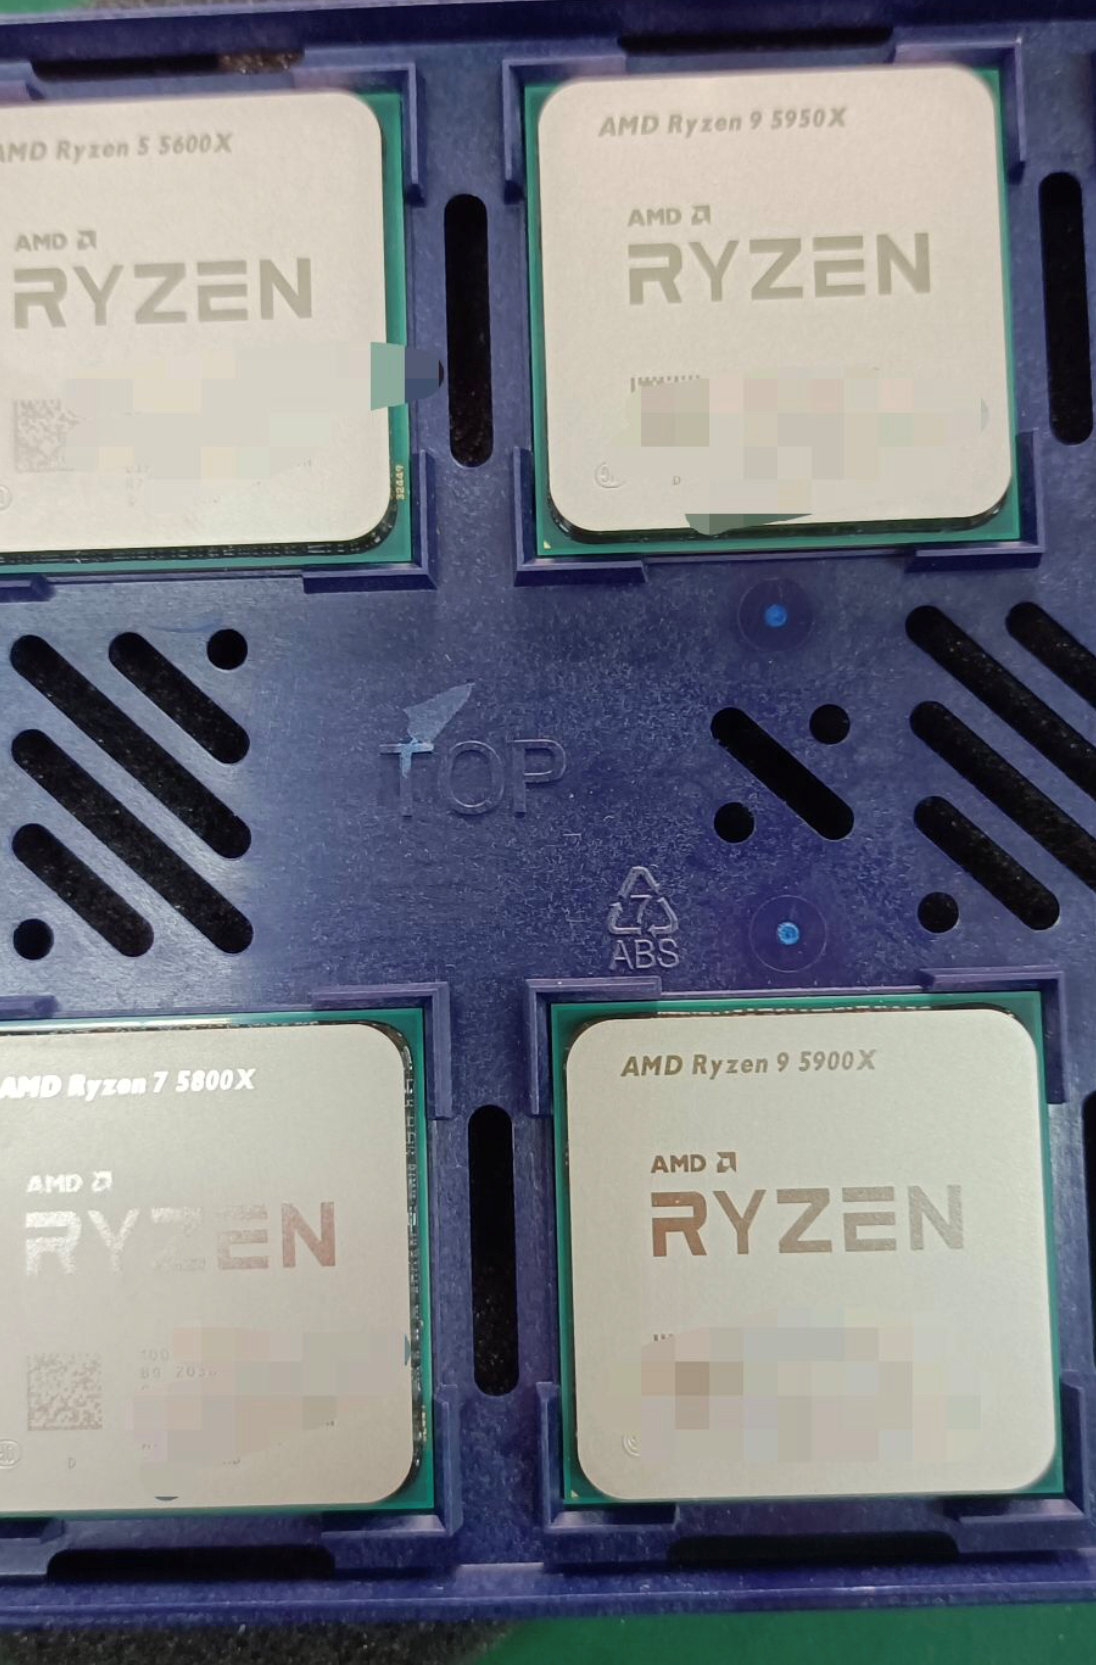 AMD Ryzen 9 5950X, Ryzen 9 5900X, Ryzen 7 5800X Benchmarks Leak Out